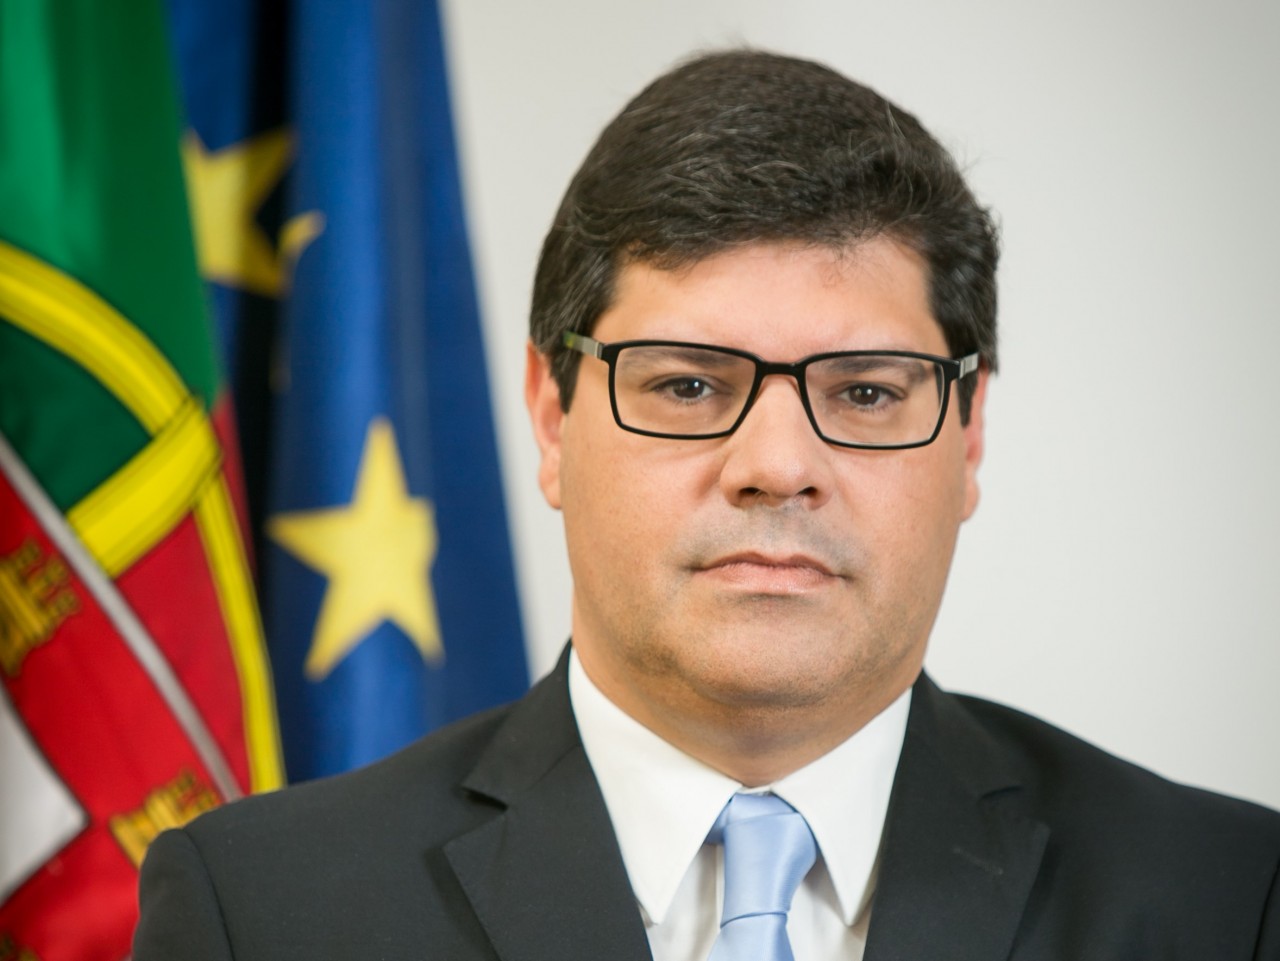 Secretário de Estado percorre Portugal para promover economia - BOM DIA  Luxemburgo